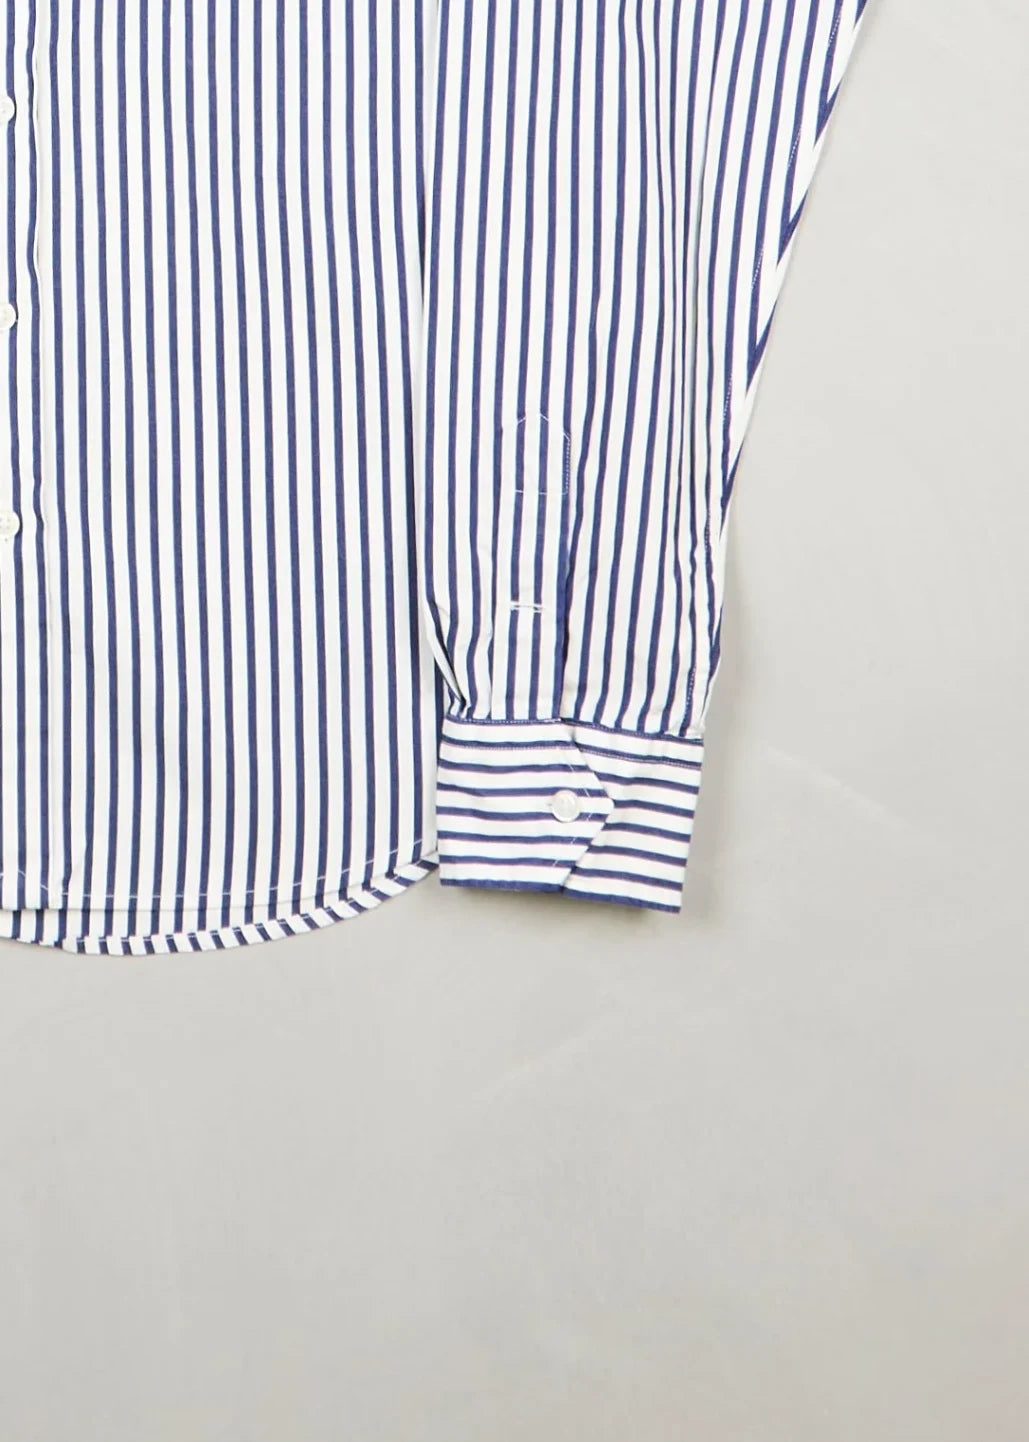 Ralph Lauren - Shirt (XS) Bottom Right